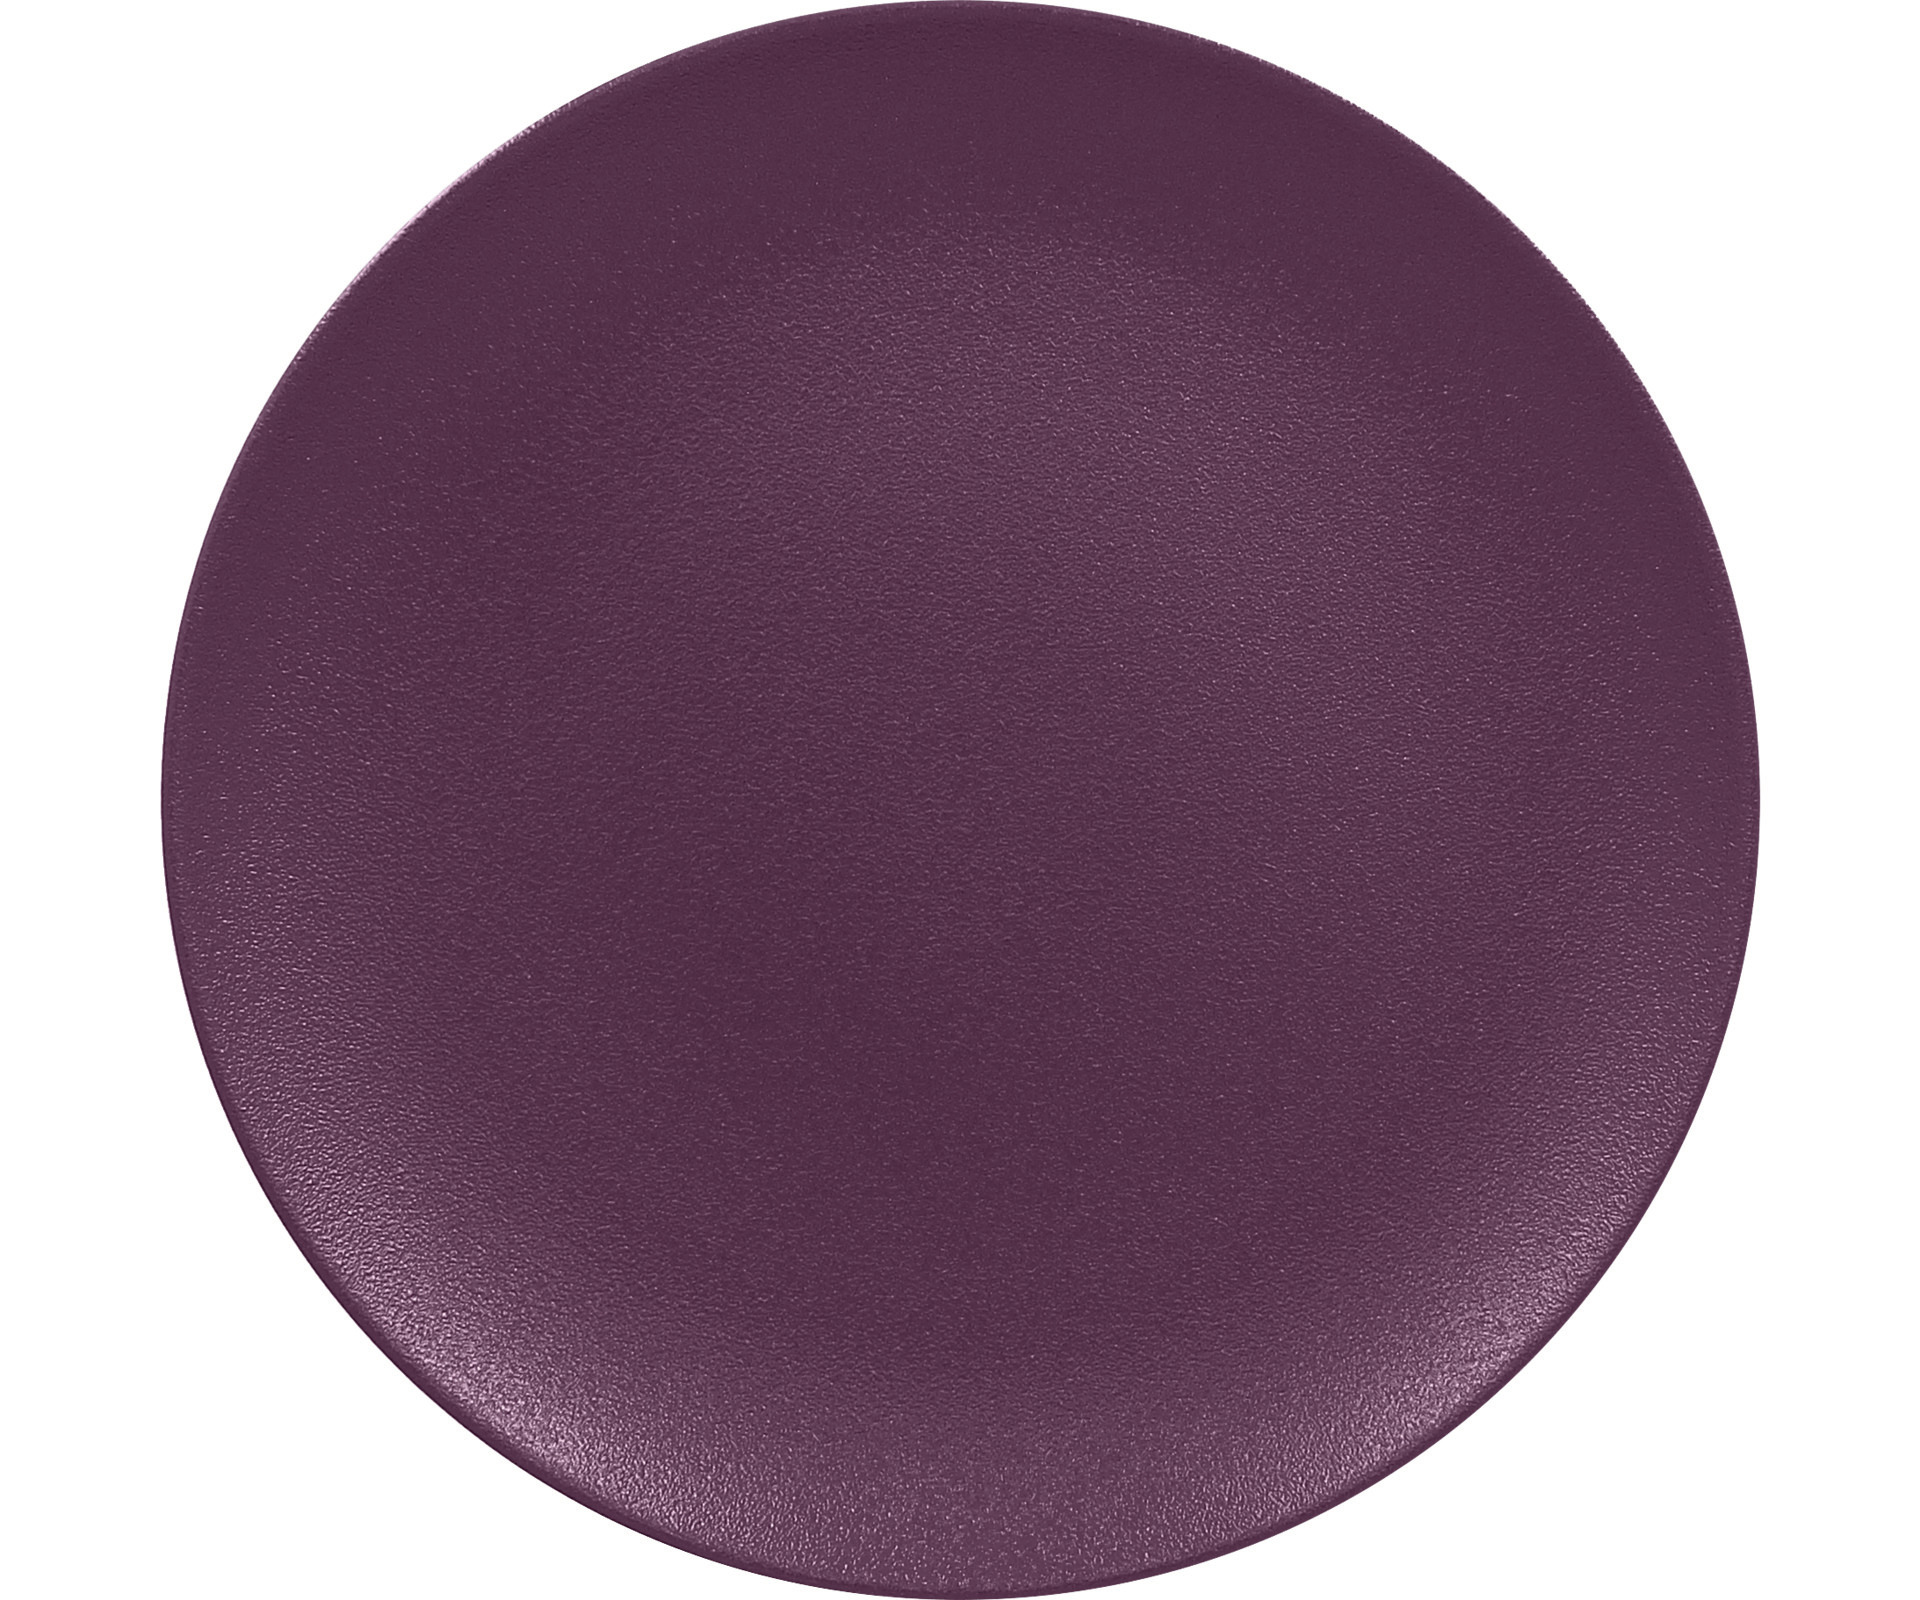 Coupteller flach 310 mm plum-purple